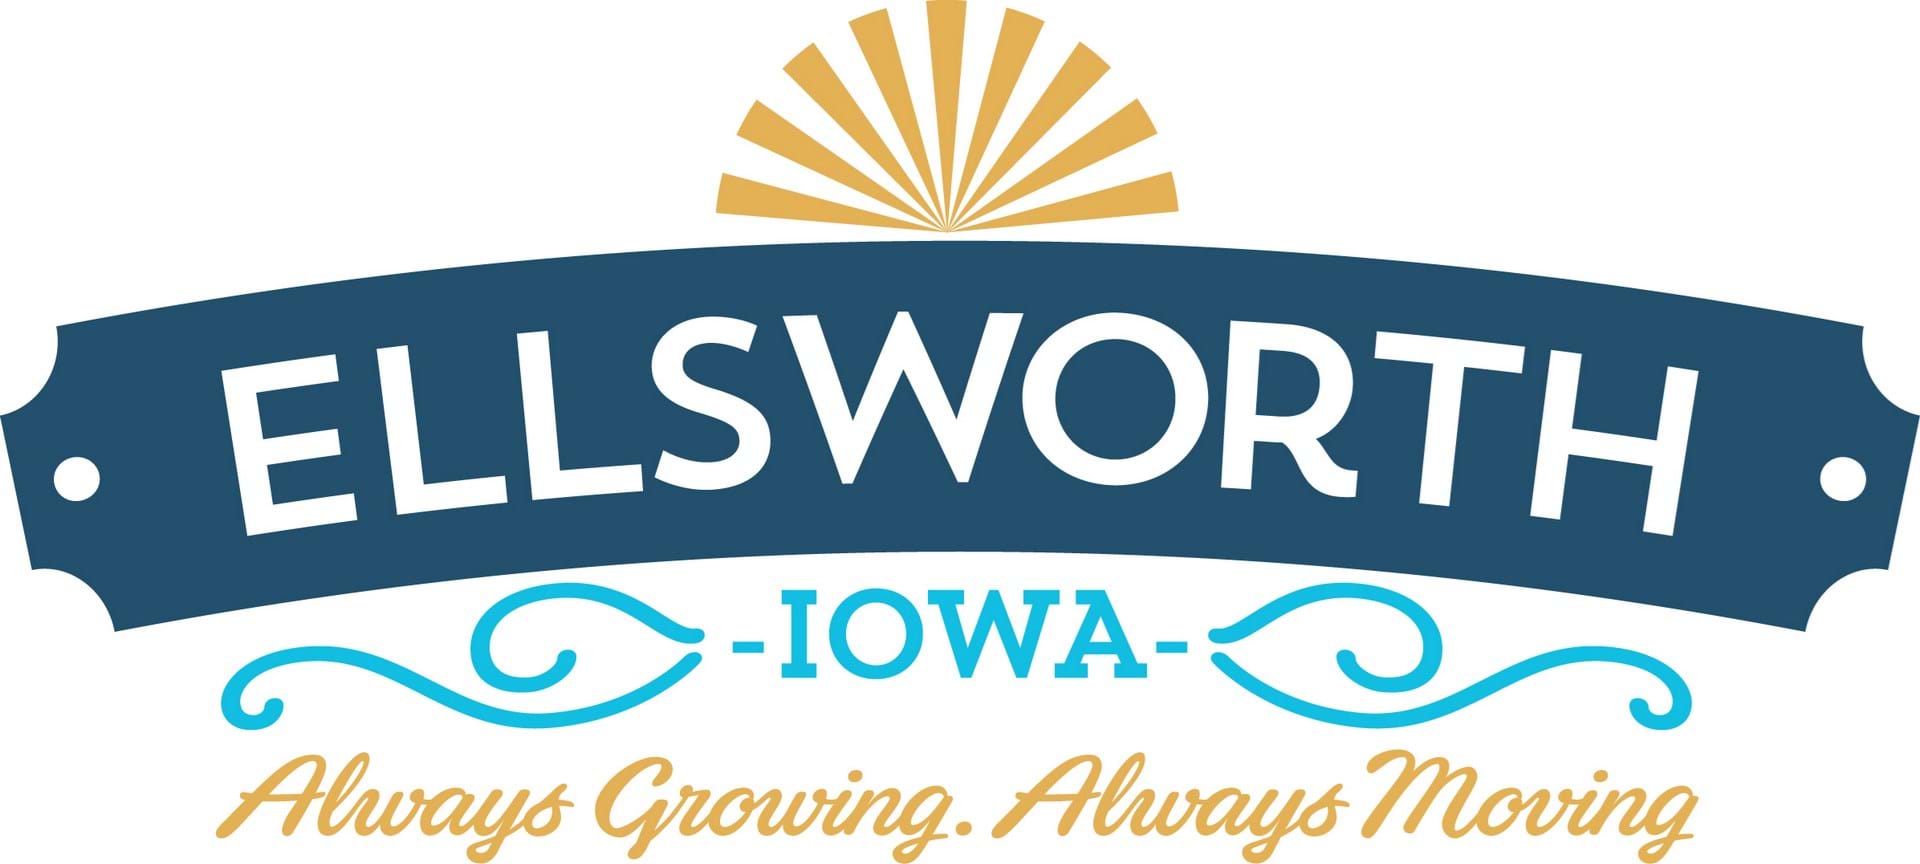 Ellsworth, Iowa